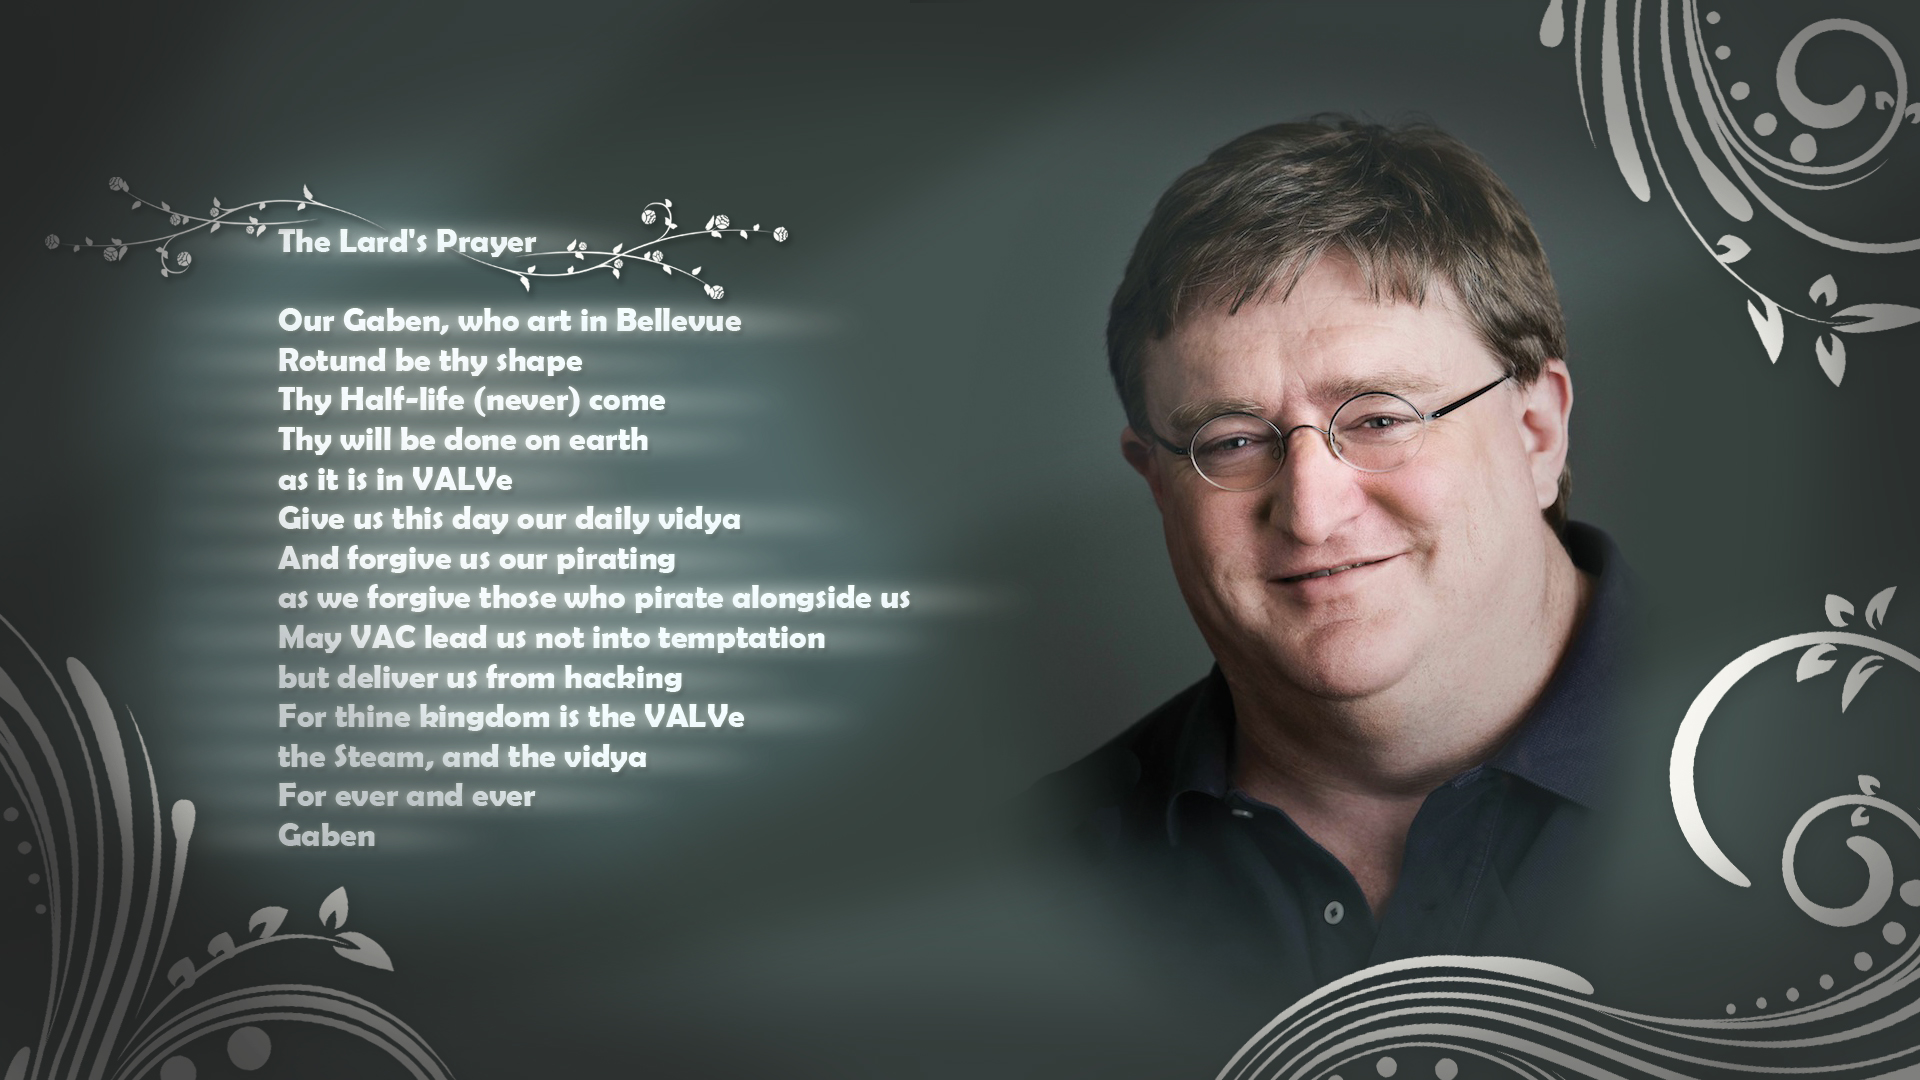 The Lard's Prayer - Gabe Newell , HD Wallpaper & Backgrounds